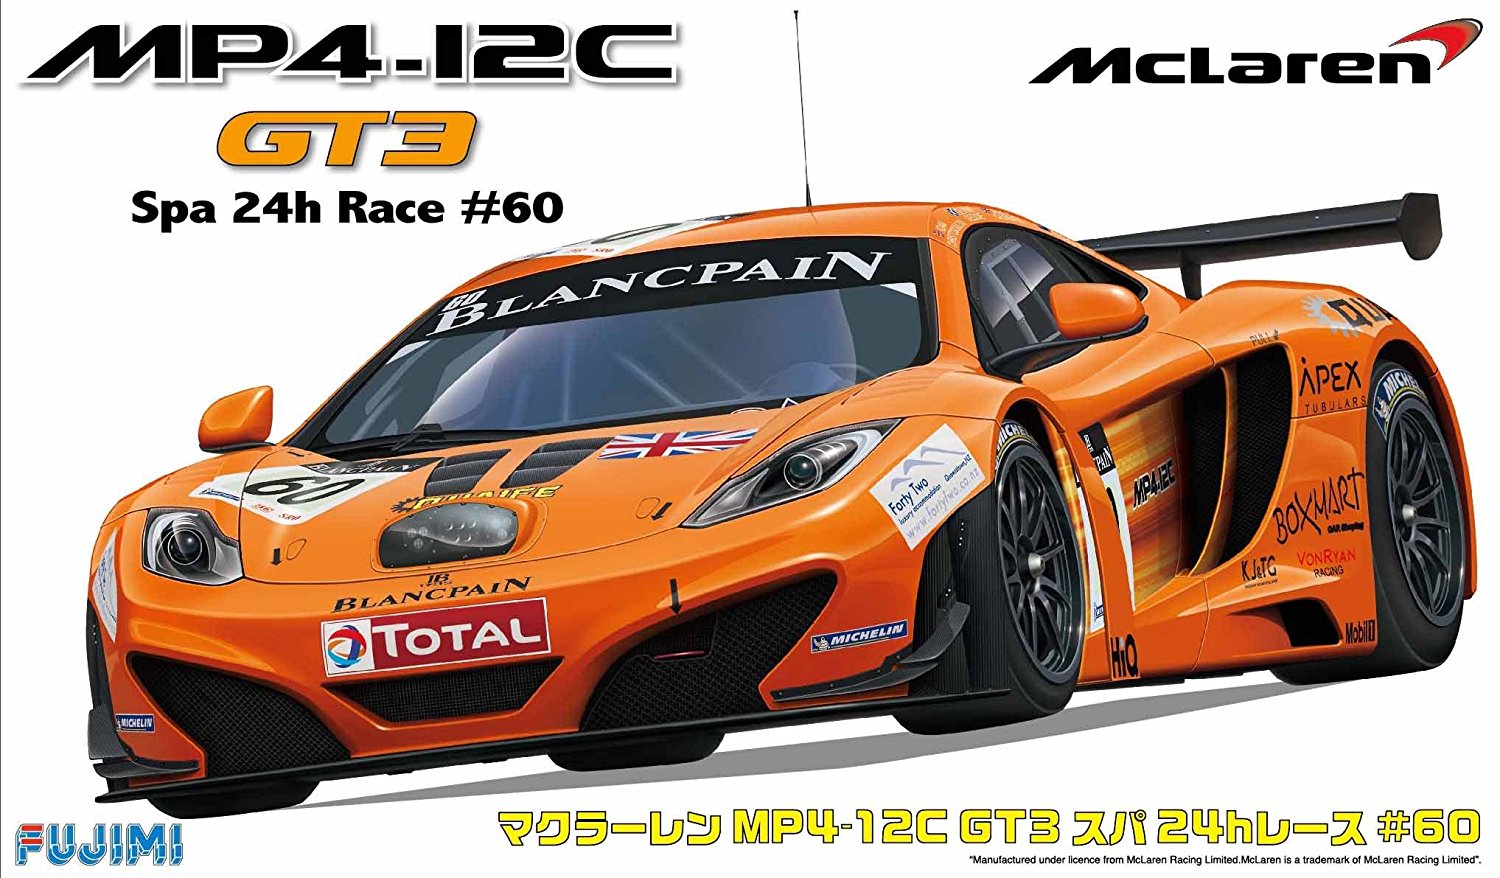 McLaren MP4-12C GT3 Spa 24 Hours race #60